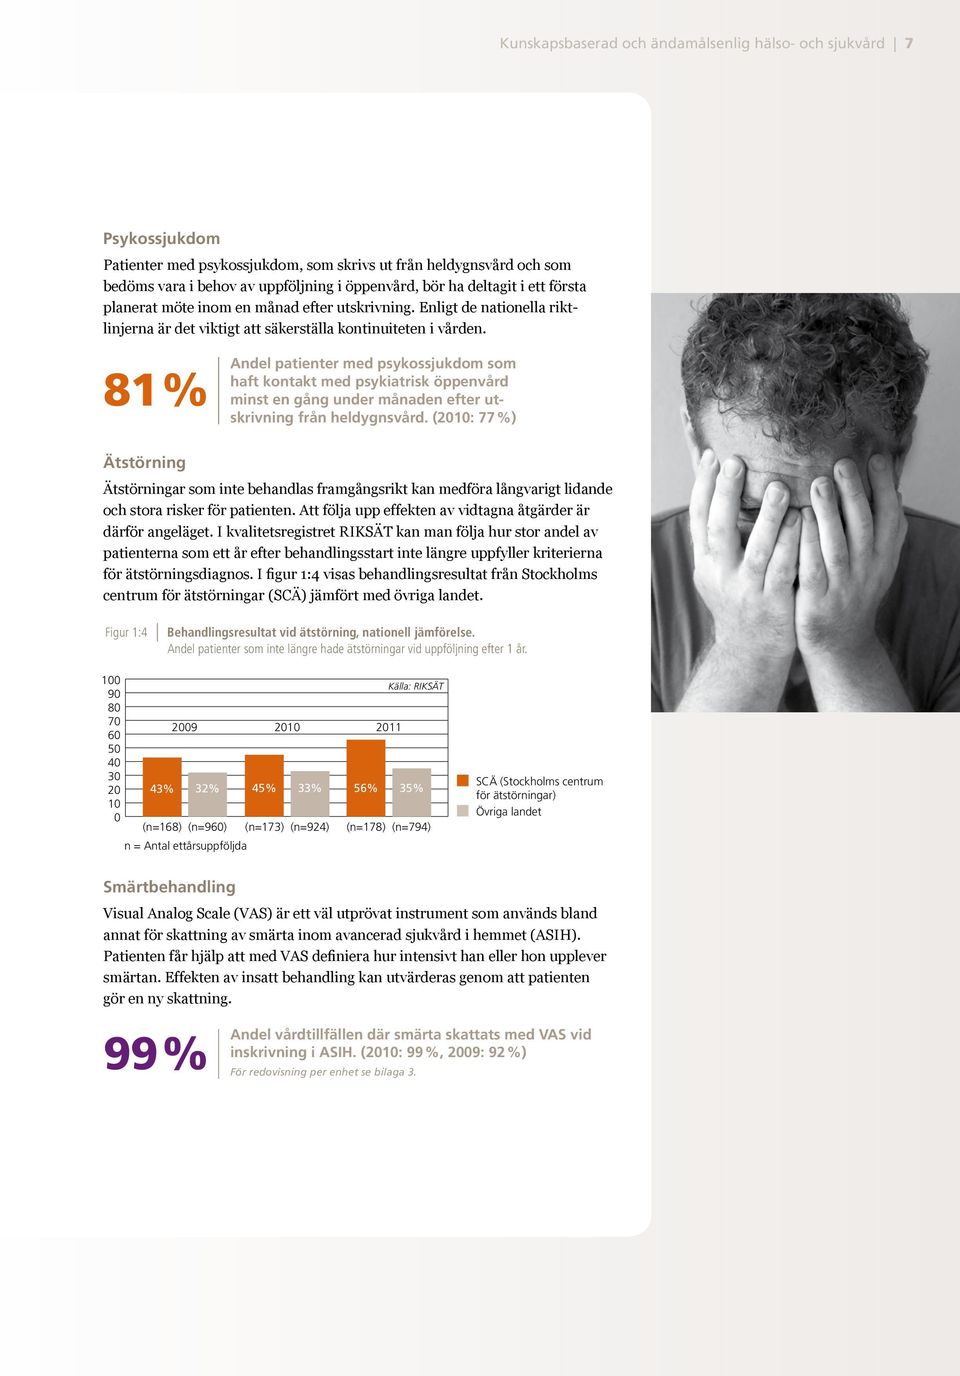 81 % Andel patienter med psykossjukdom som haft kontakt med psykiatrisk öppenvård minst en gång under månaden efter utskrivning från heldygnsvård.